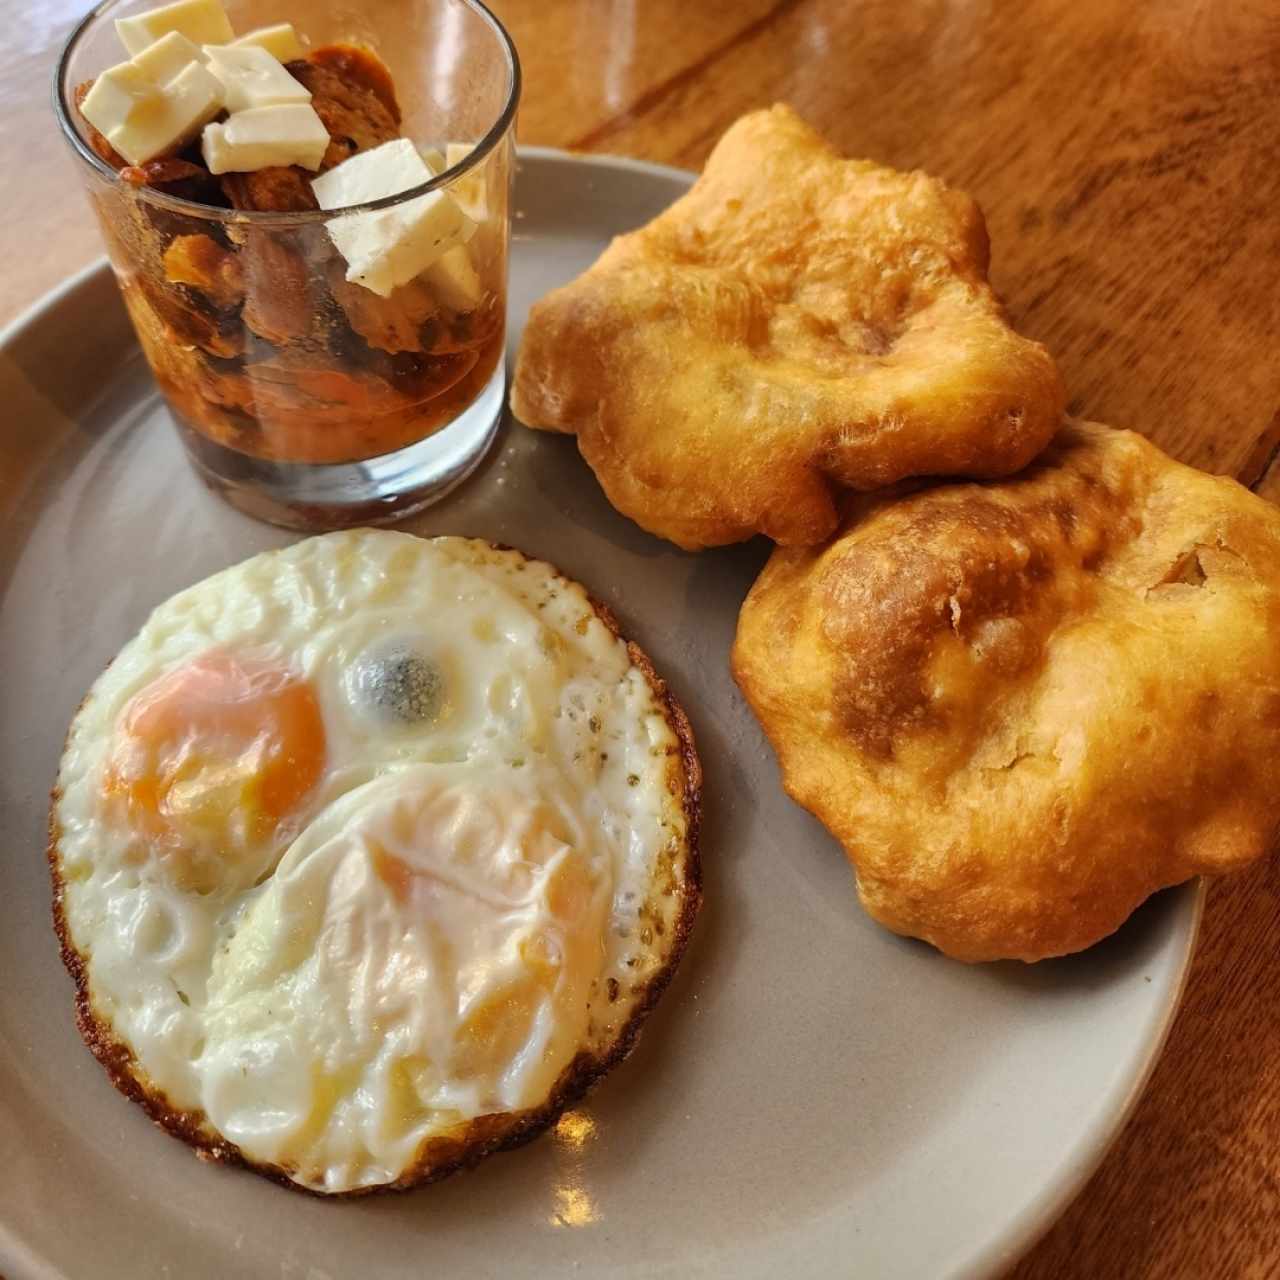 Desayuno - El Panameño 2.0